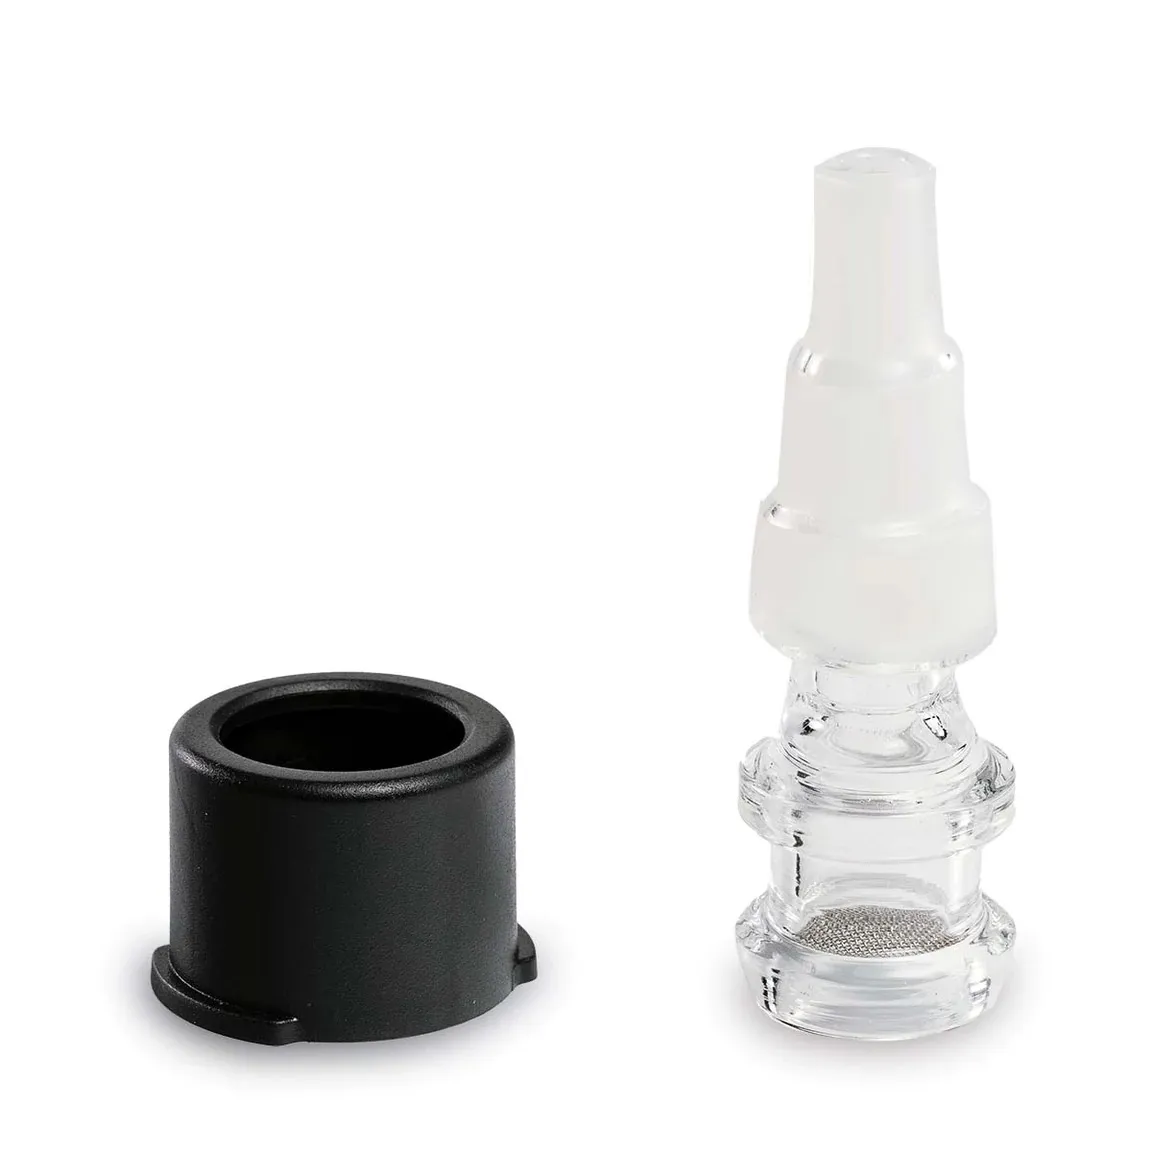 Tubo de agua de 10 mm/14 mm Bong Adaptador Bubbler Kit de herramientas de vidrio para fumar para Storz Bickel Mighty MightyPlus Craftyplus